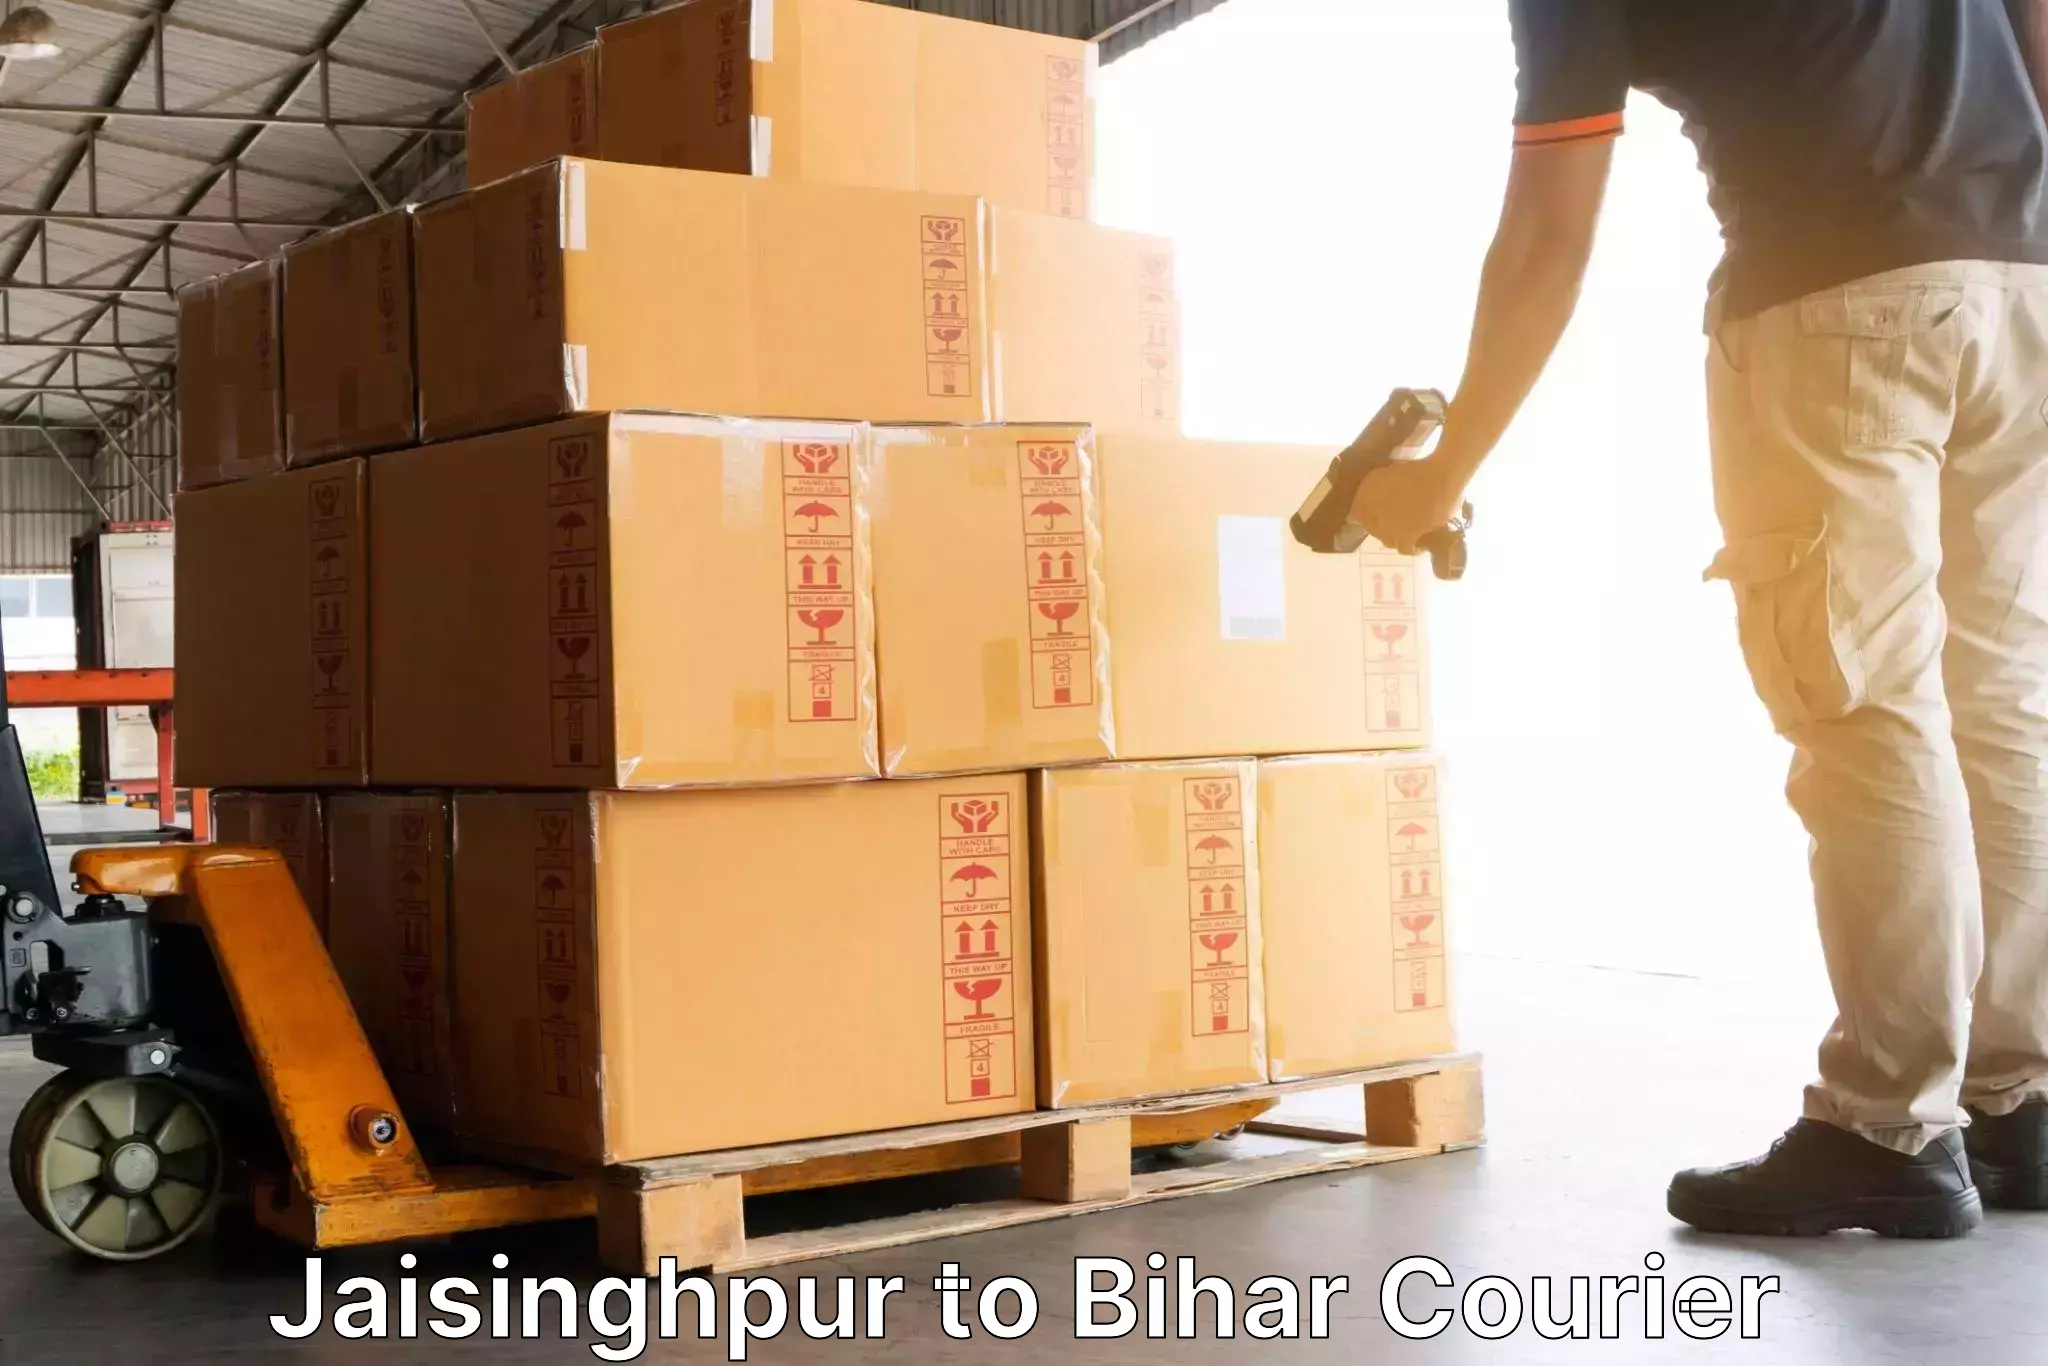 Expedited shipping methods Jaisinghpur to Chakai